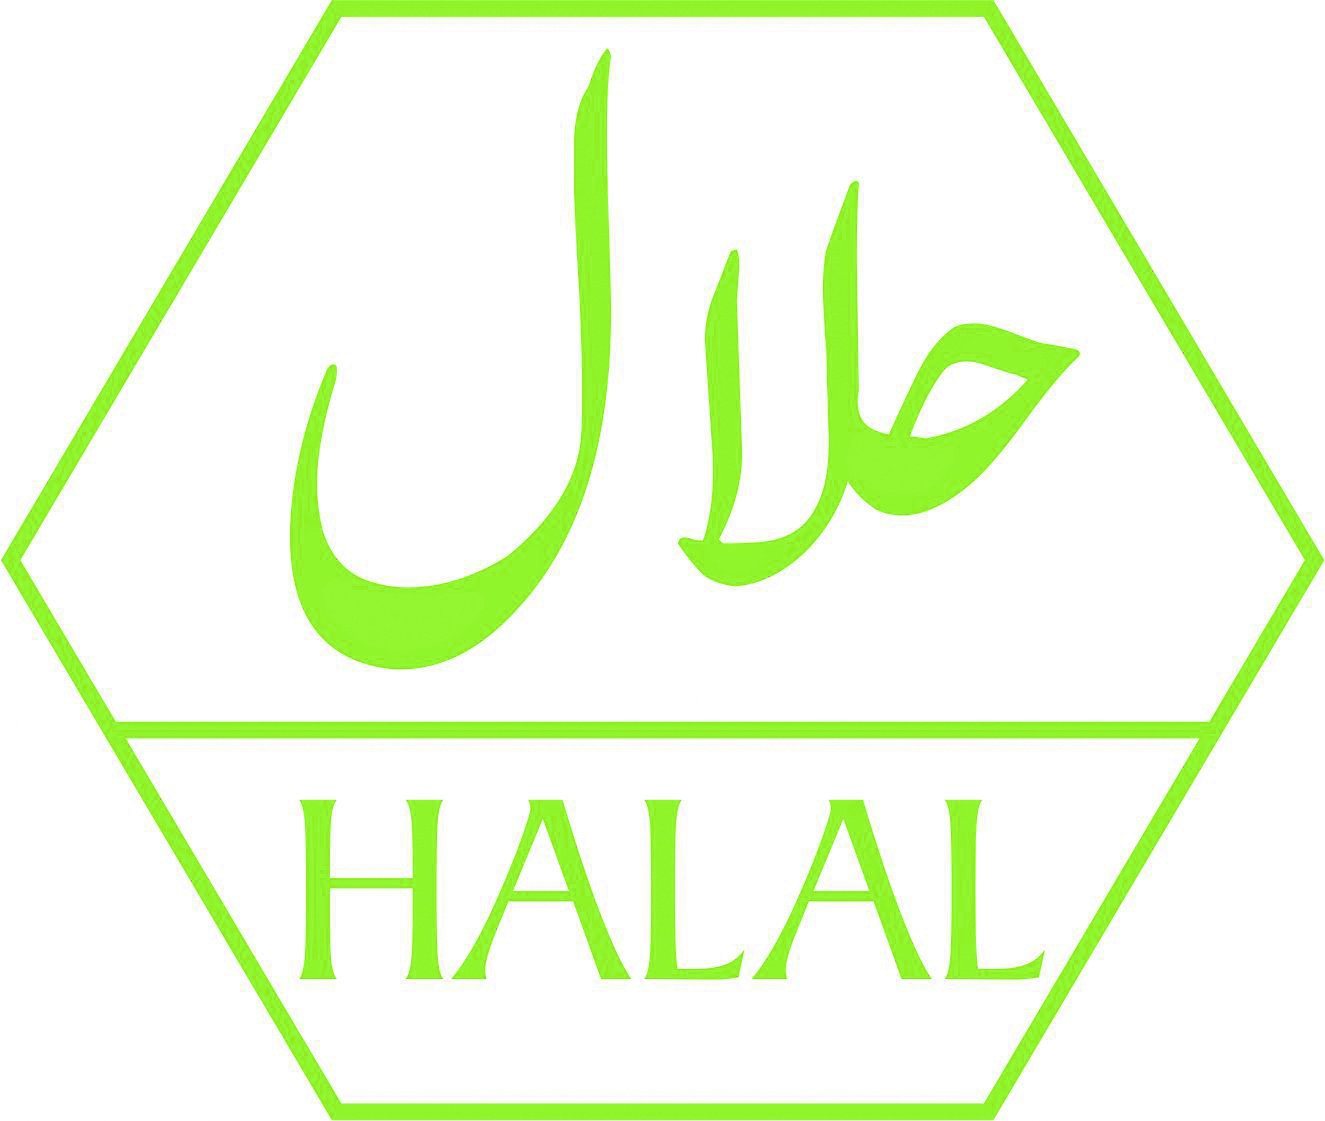 Халяль аш. Халяль. Значок Халяль. Логотип халал. Halal Халяль logo.